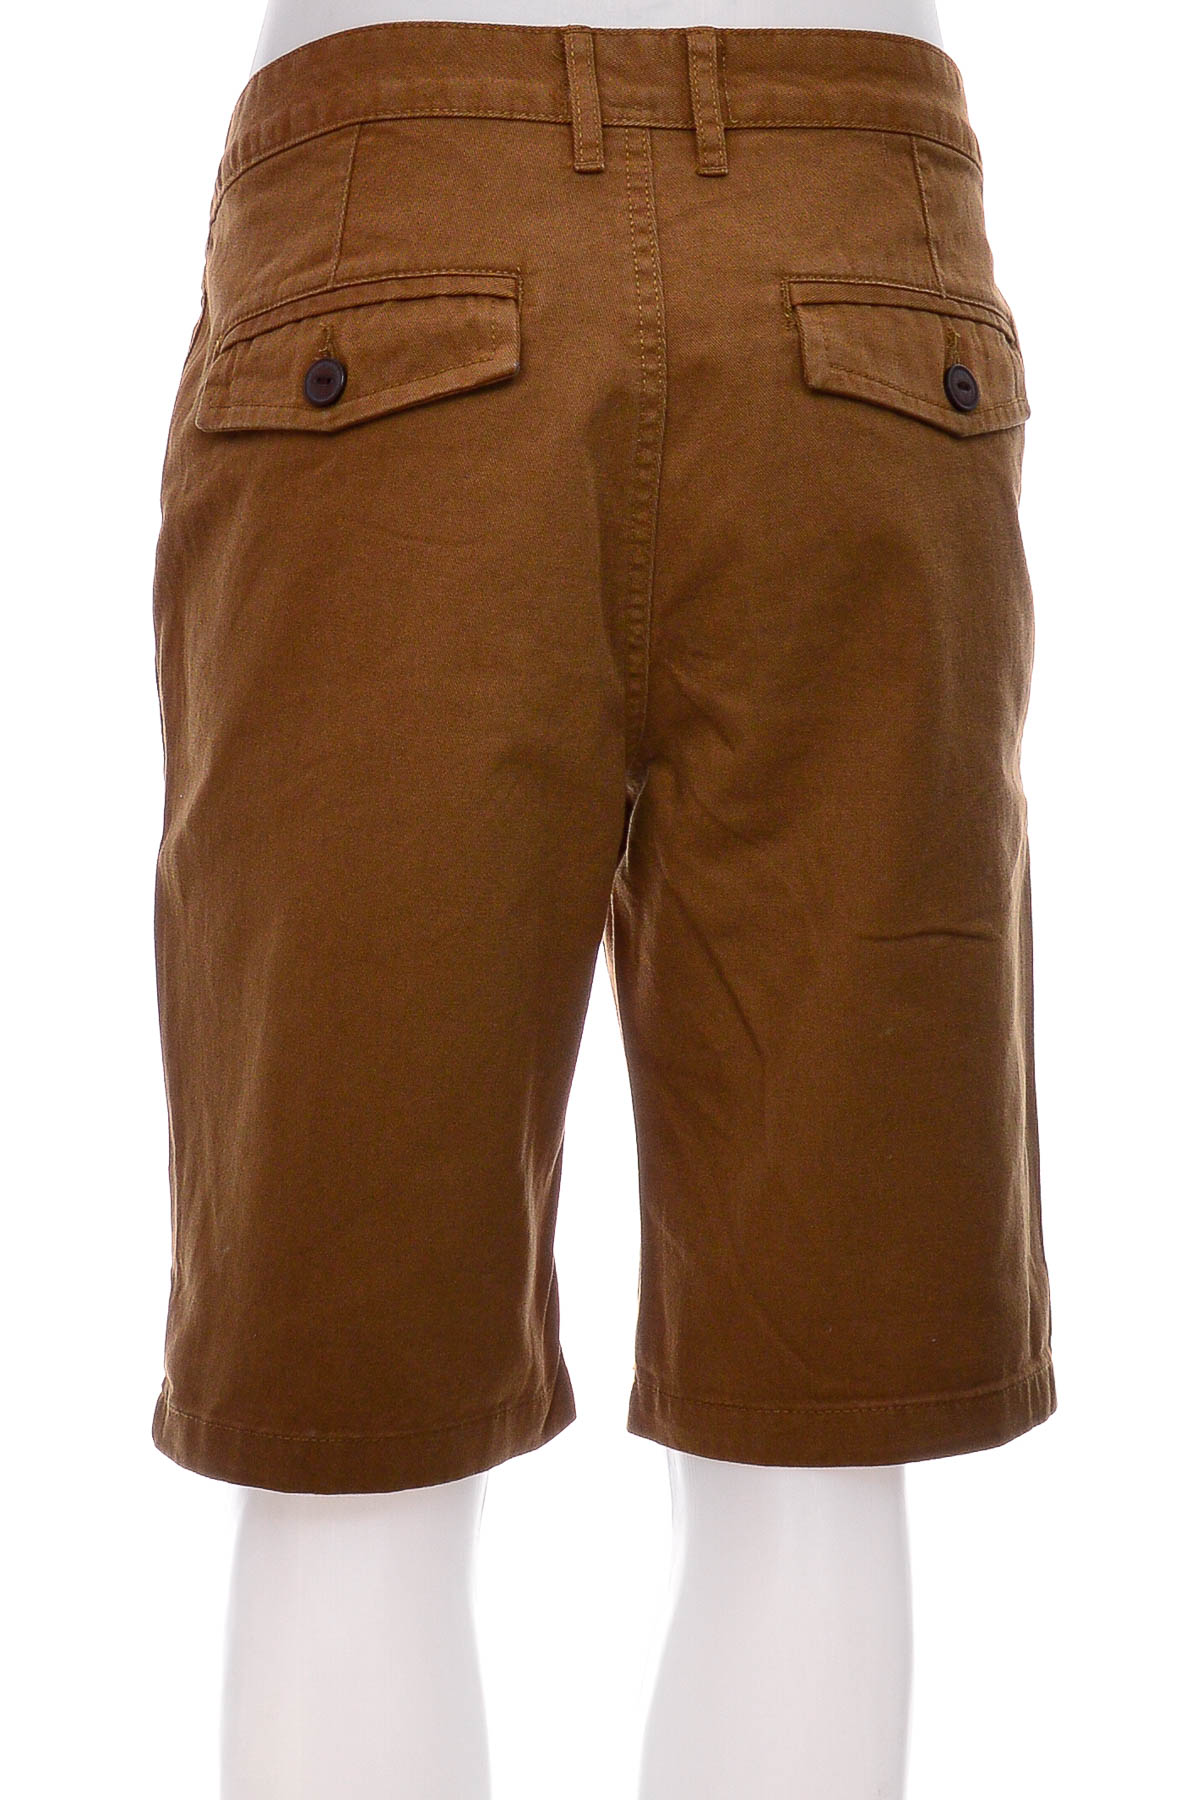 Men's shorts - Kiomi - 1